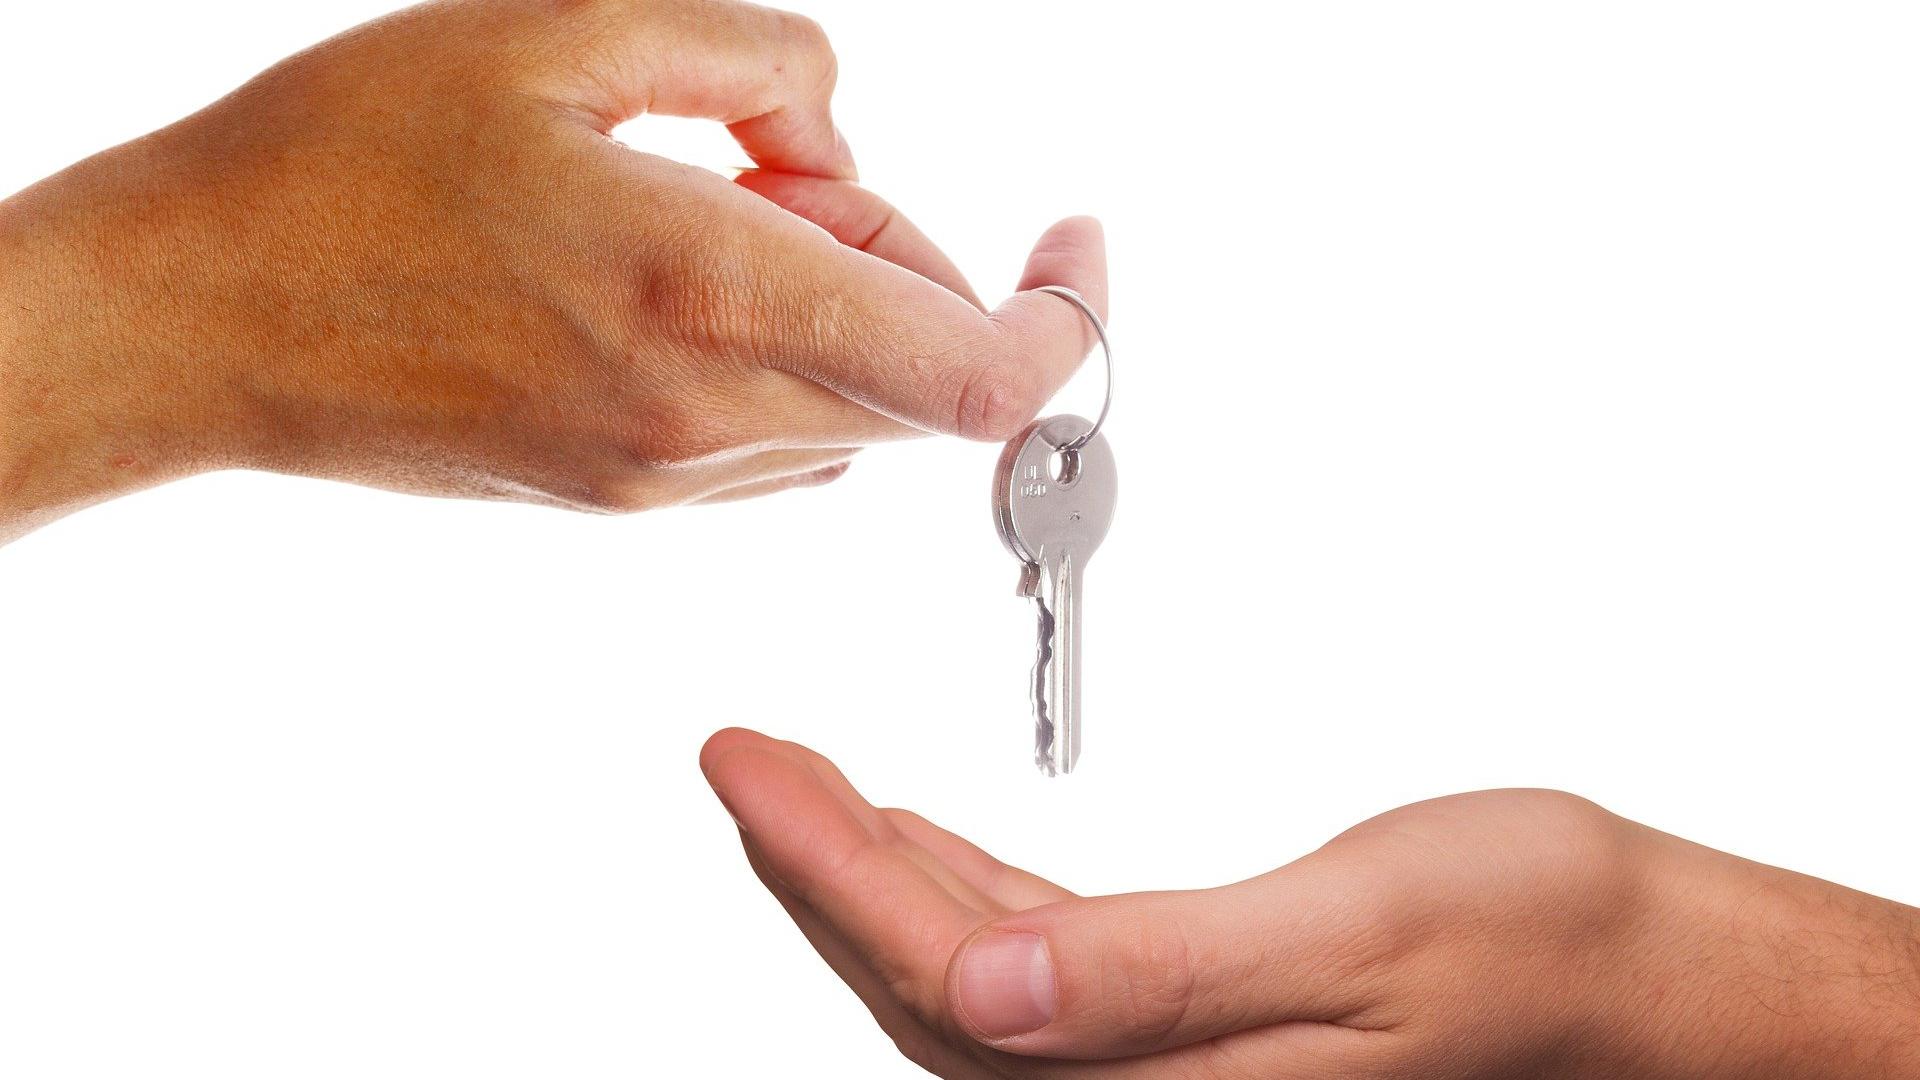 Stimmungsbild zum Beitrag: Eine Hand übergibt einen Schlüssel in eine andere Hand.